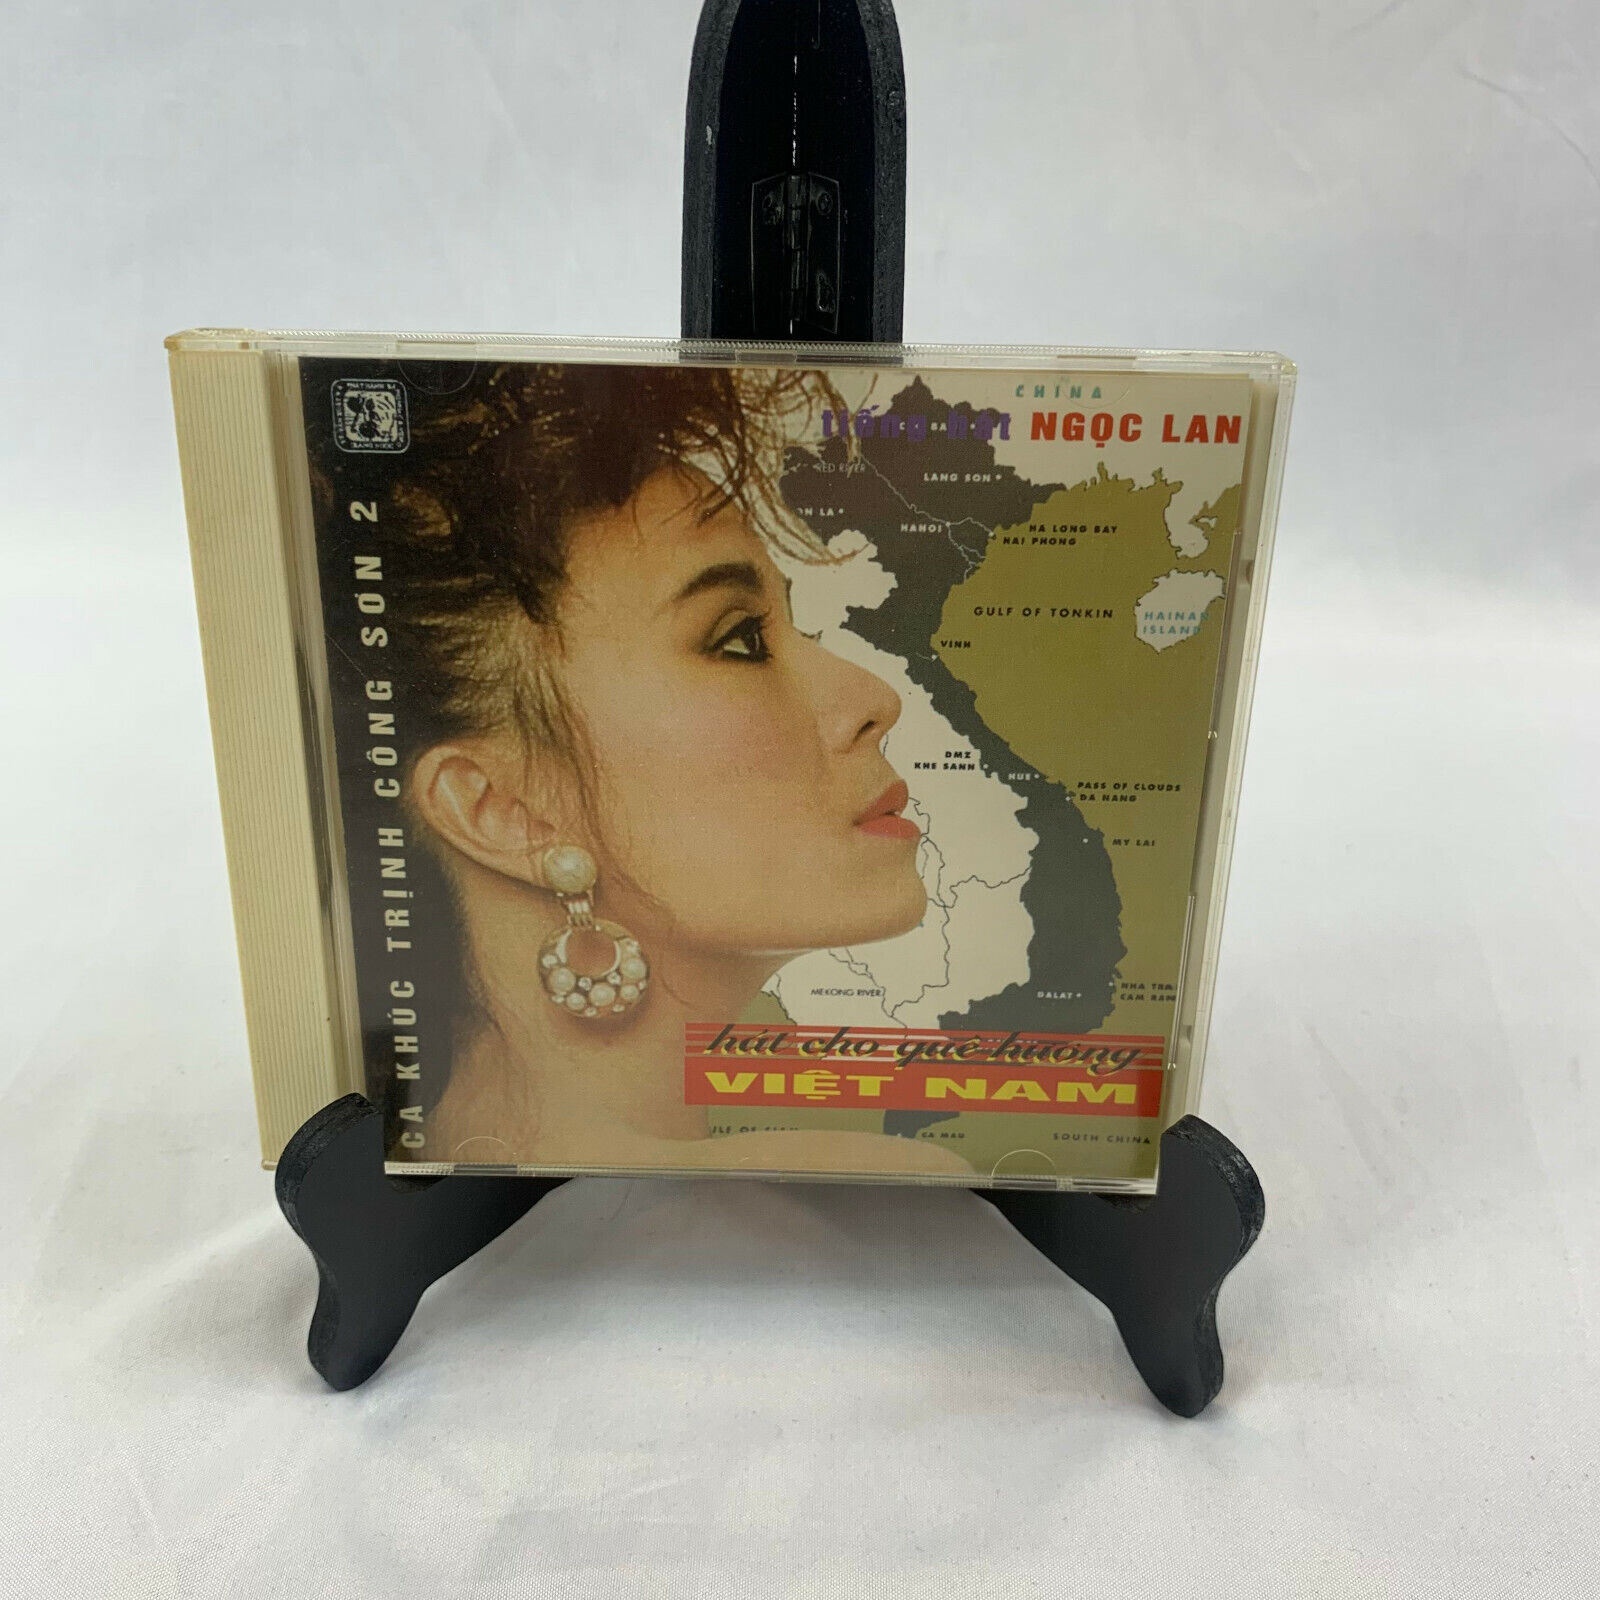 Vietnamese Music CD Ngoc Lan, Hat Cho Que Hong Viet Nam 1994 Vintage RARE